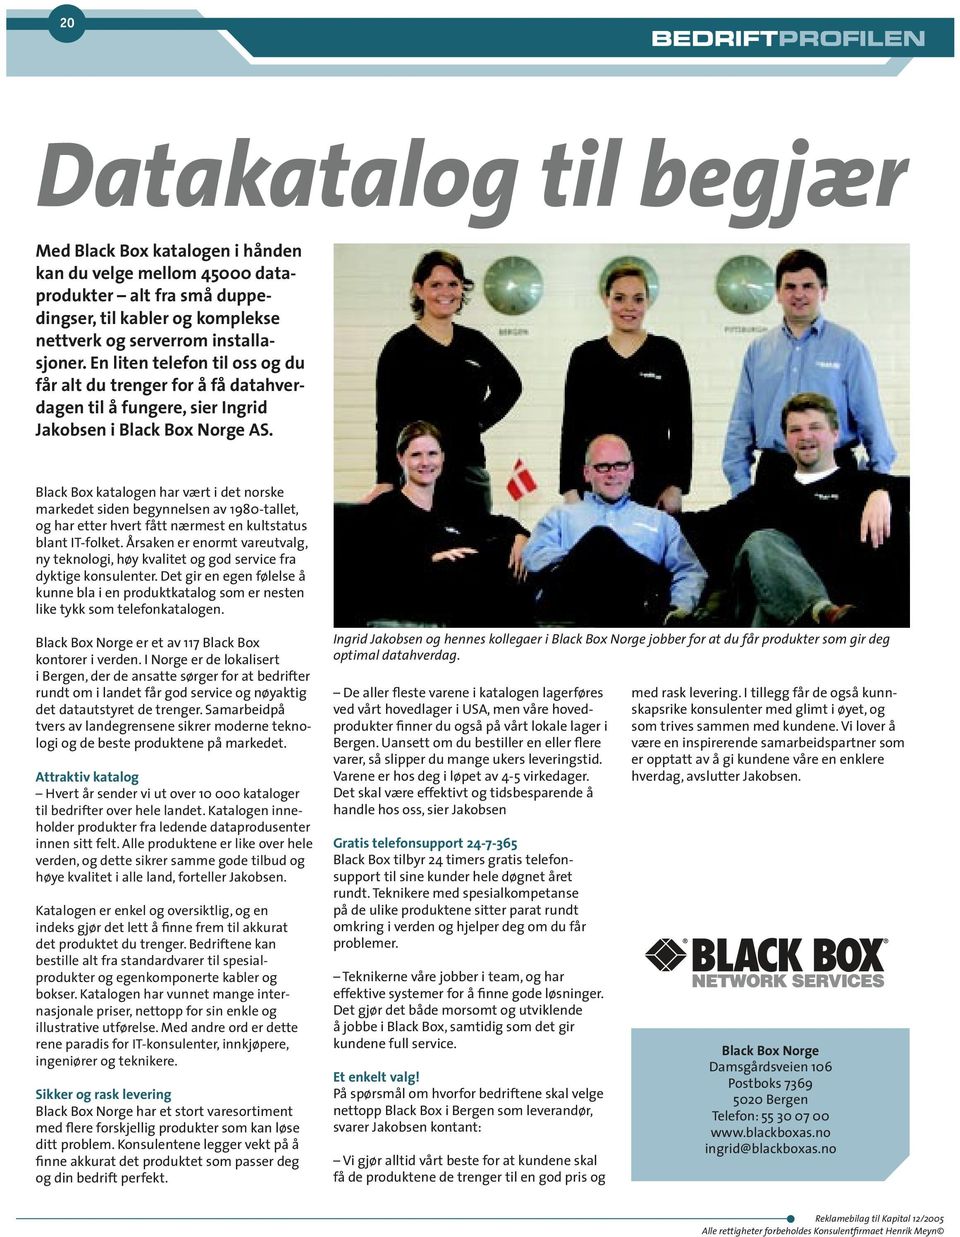 Black Box katalogen har vært i det norske markedet siden begynnelsen av 1980-tallet, og har etter hvert fått nærmest en kultstatus blant IT-folket.